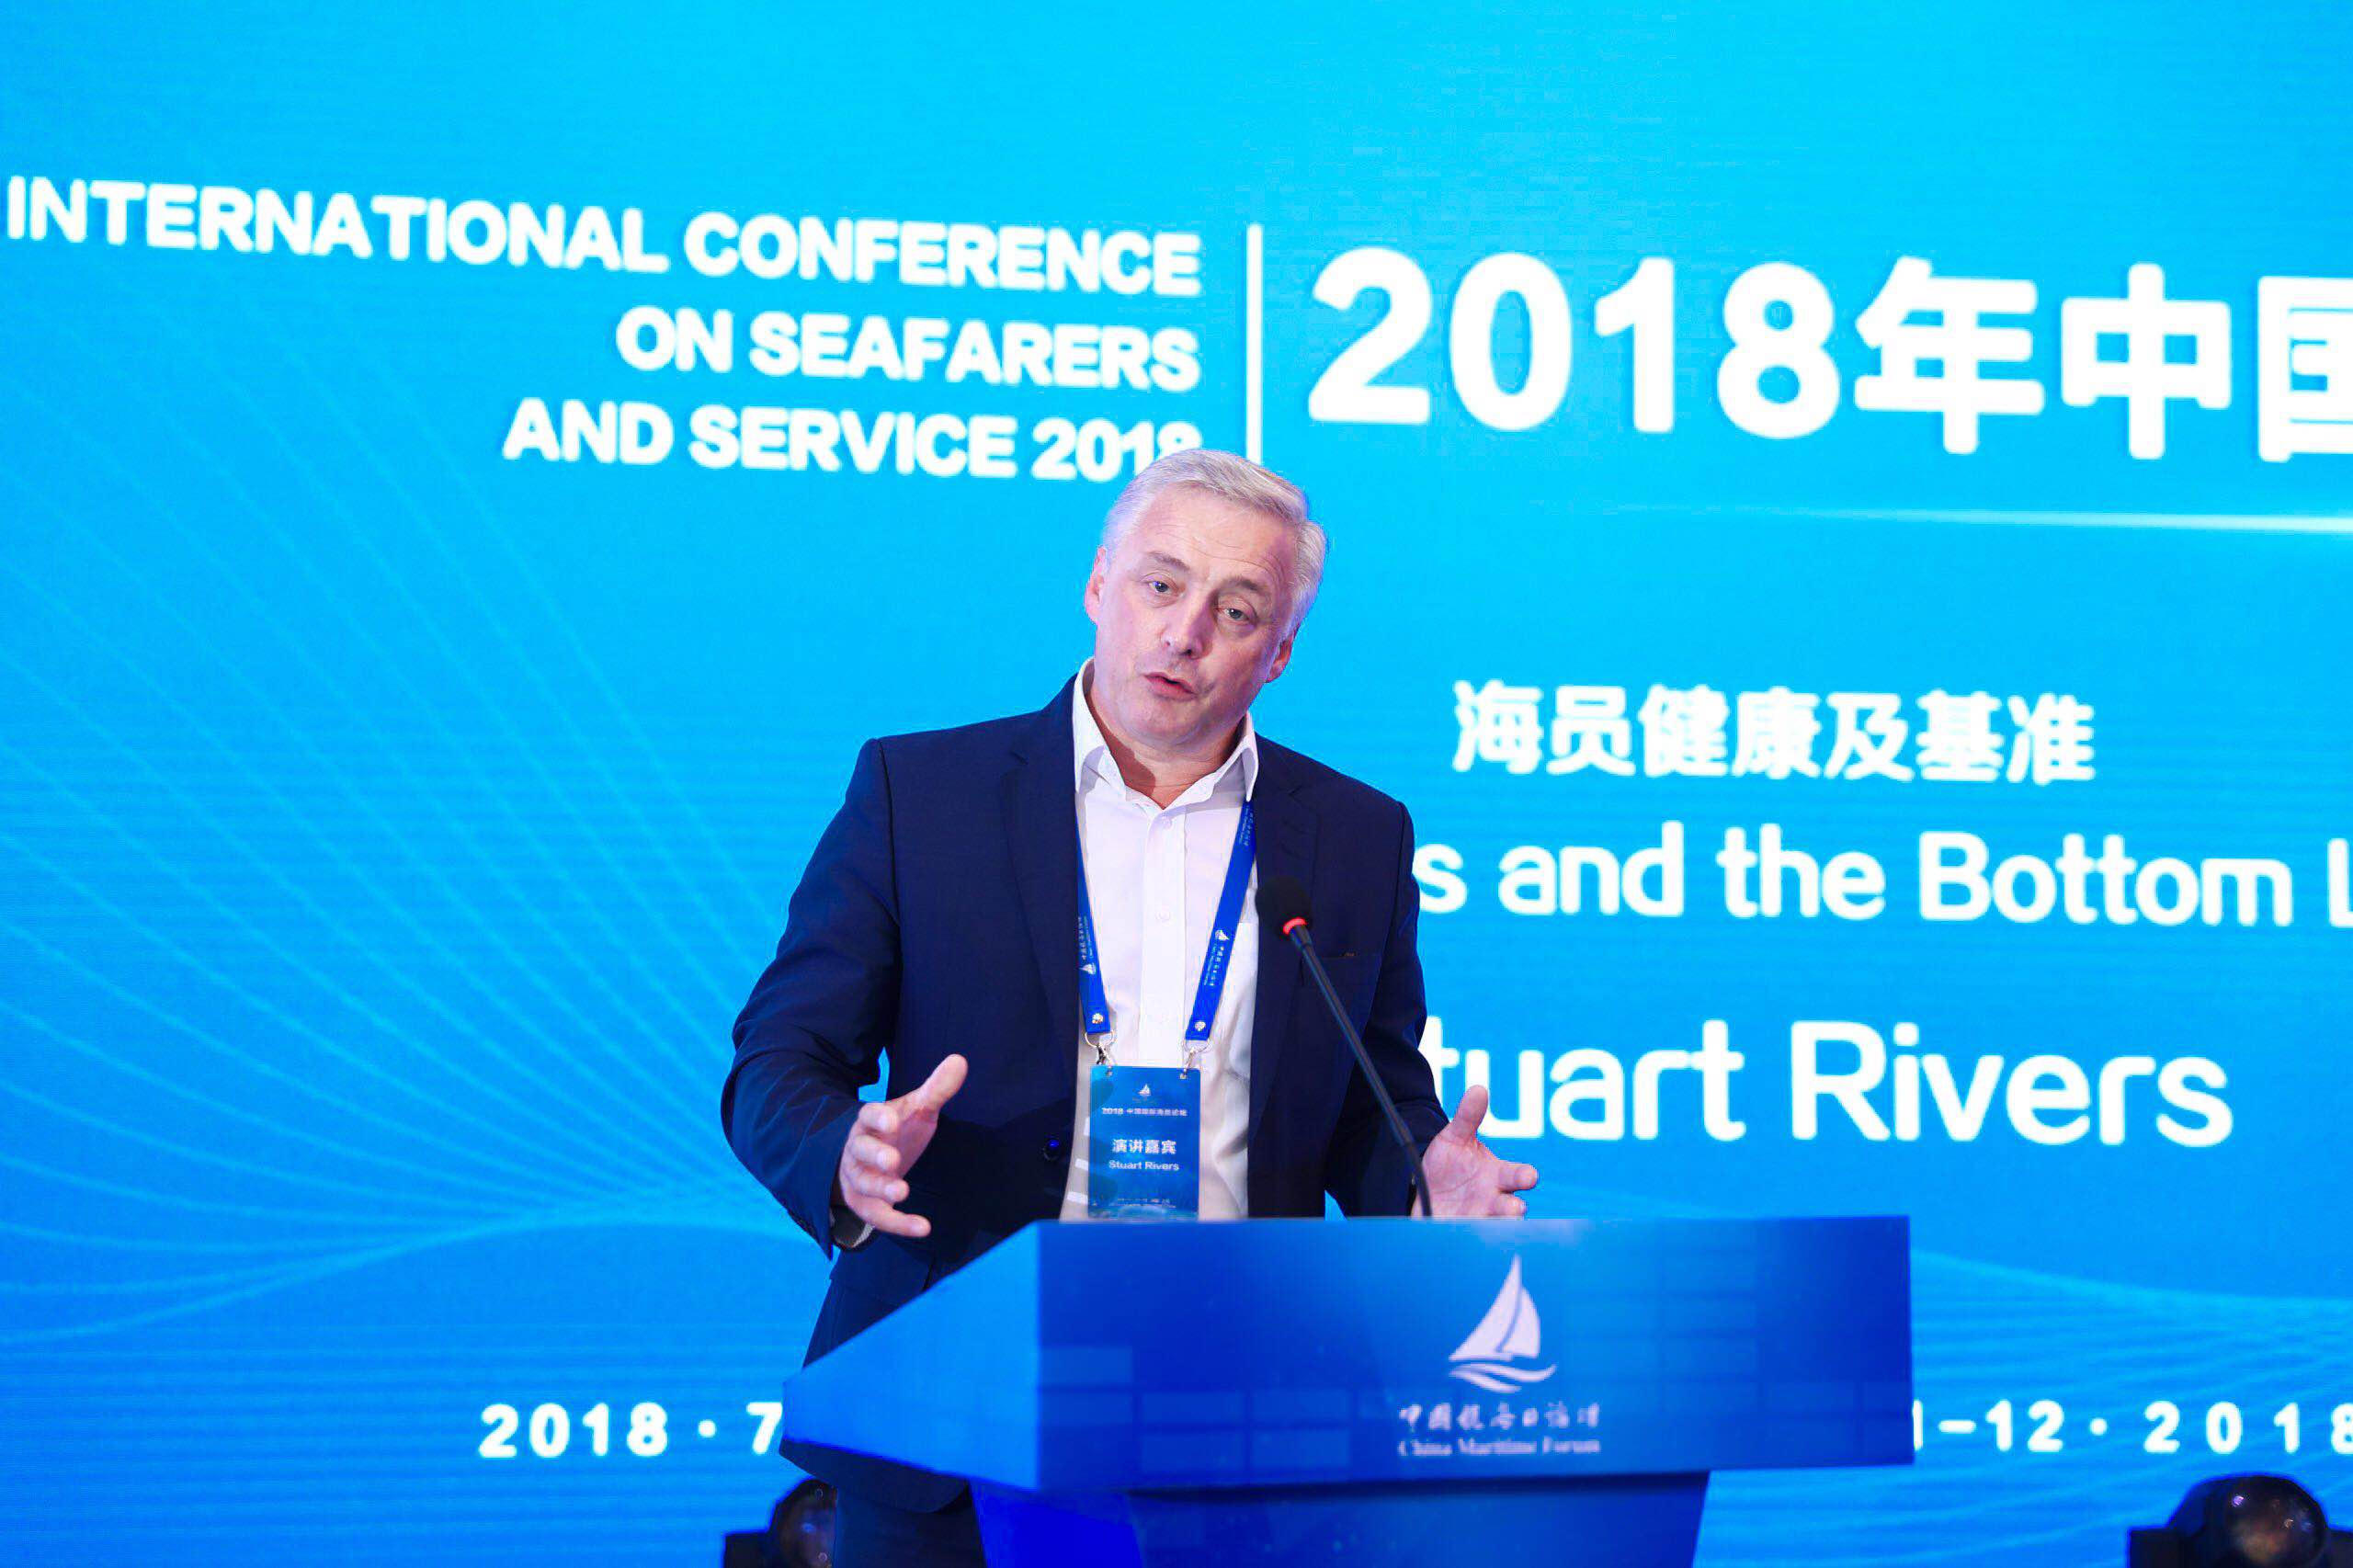 【2018中国国际海员论坛】Sturat Rivers：关注船员身心健康，减少海事事故